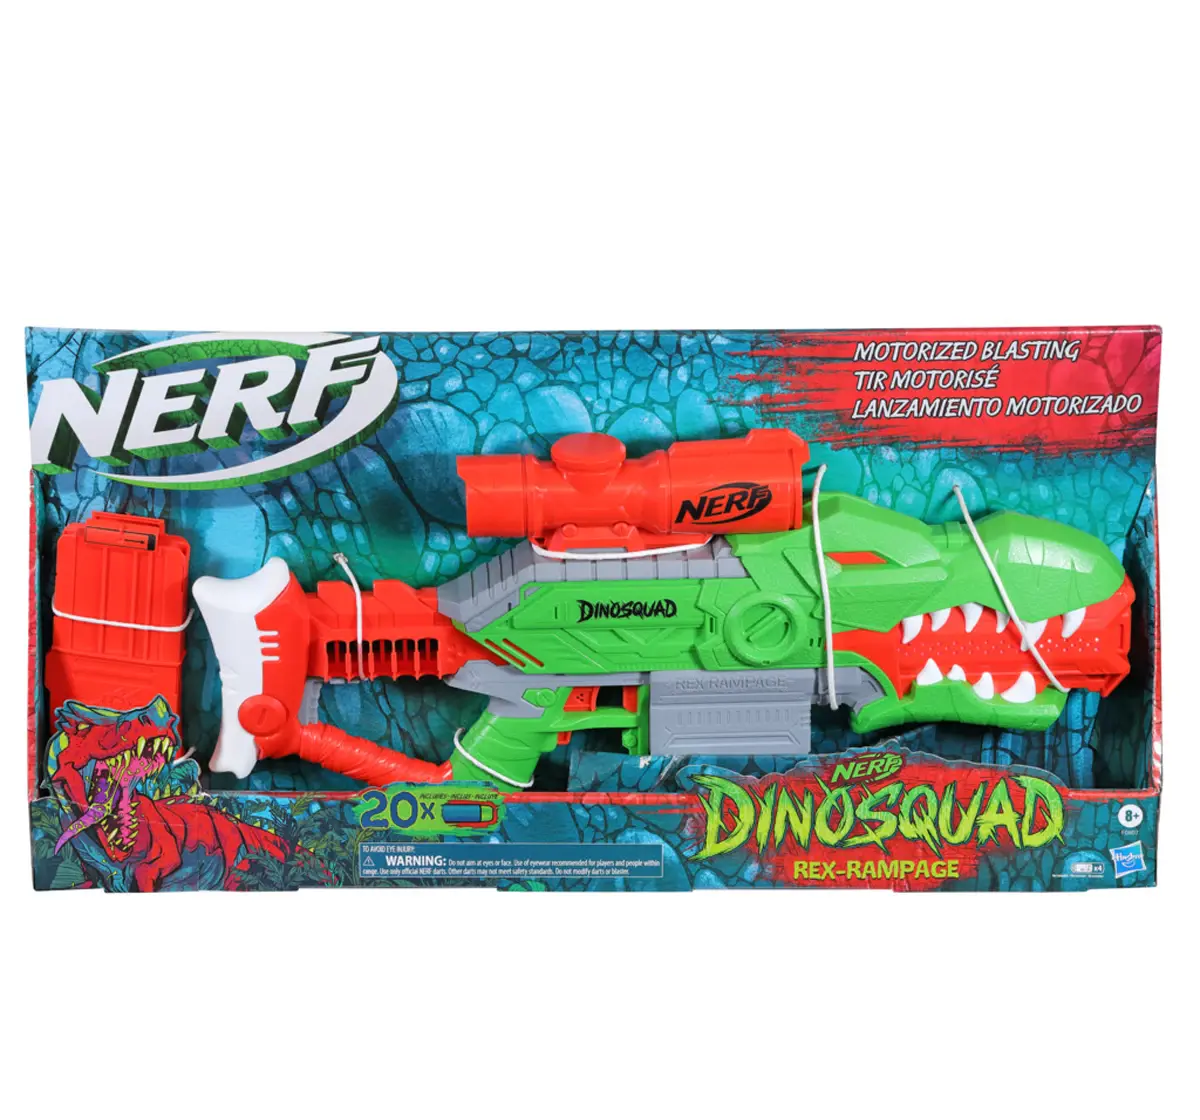 Nerf DinoSquad Rex-Ramp, Motorized Dart Blaster, 10-Dart Clip, 20 Official Nerf Darts, 10-Dart StorAge, T-Rex Dinosaur Design, 8Y+